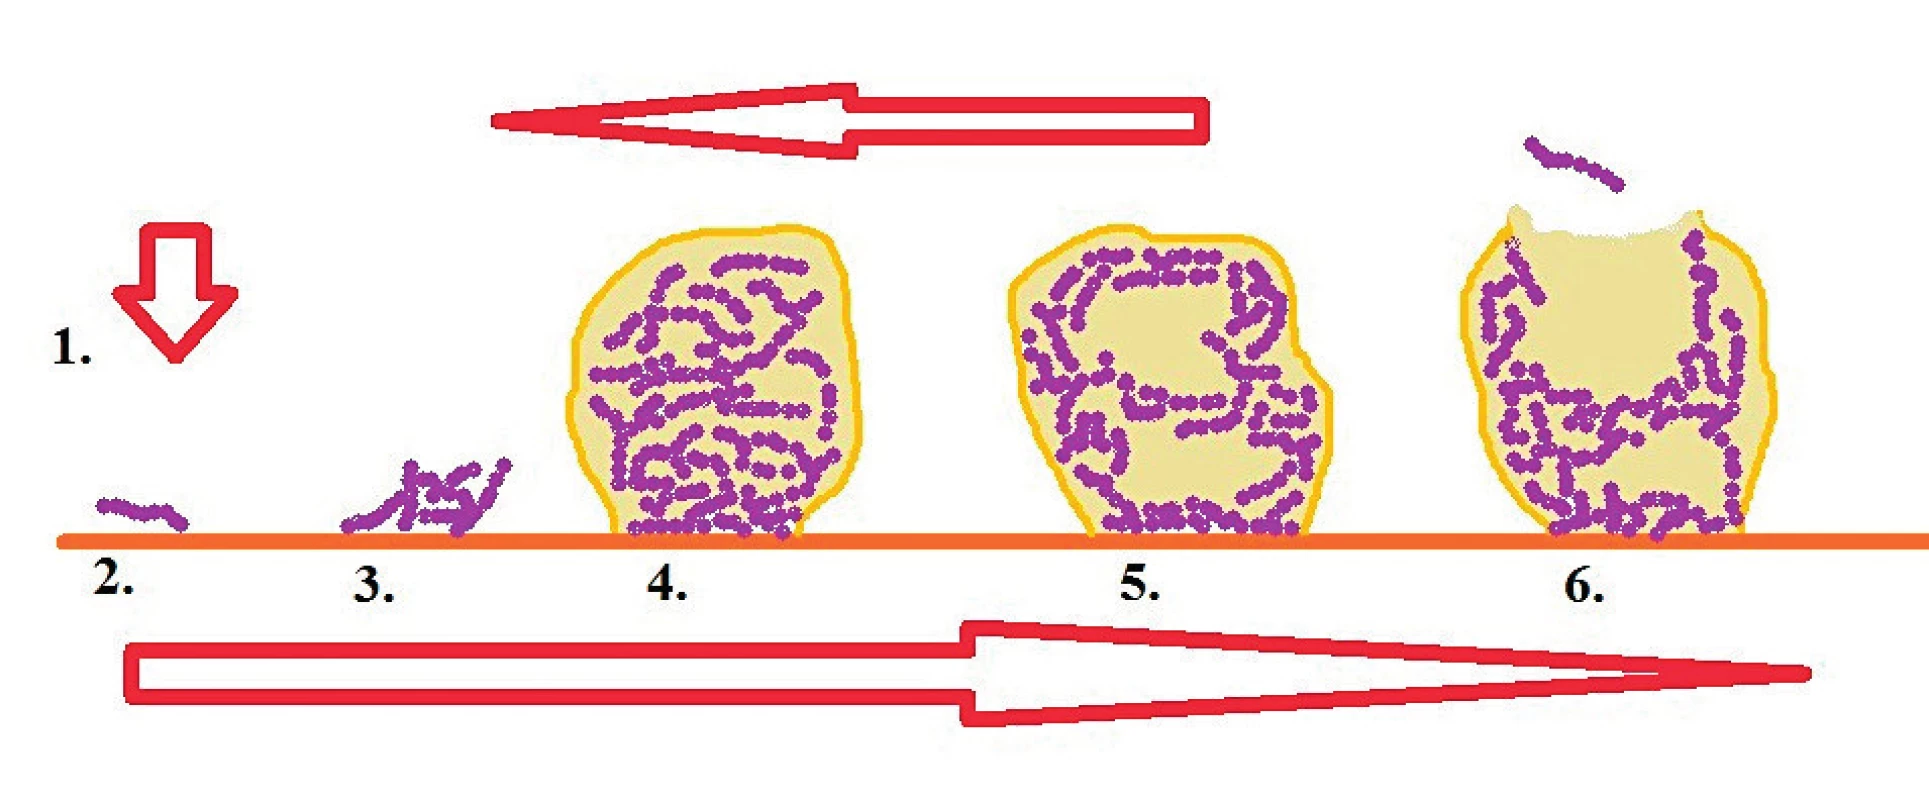 Schéma formovania biofilmu [Legéňová, 2015]
Fig. 1. Schematic representation of biofilm formation [Legéňová, 2015]